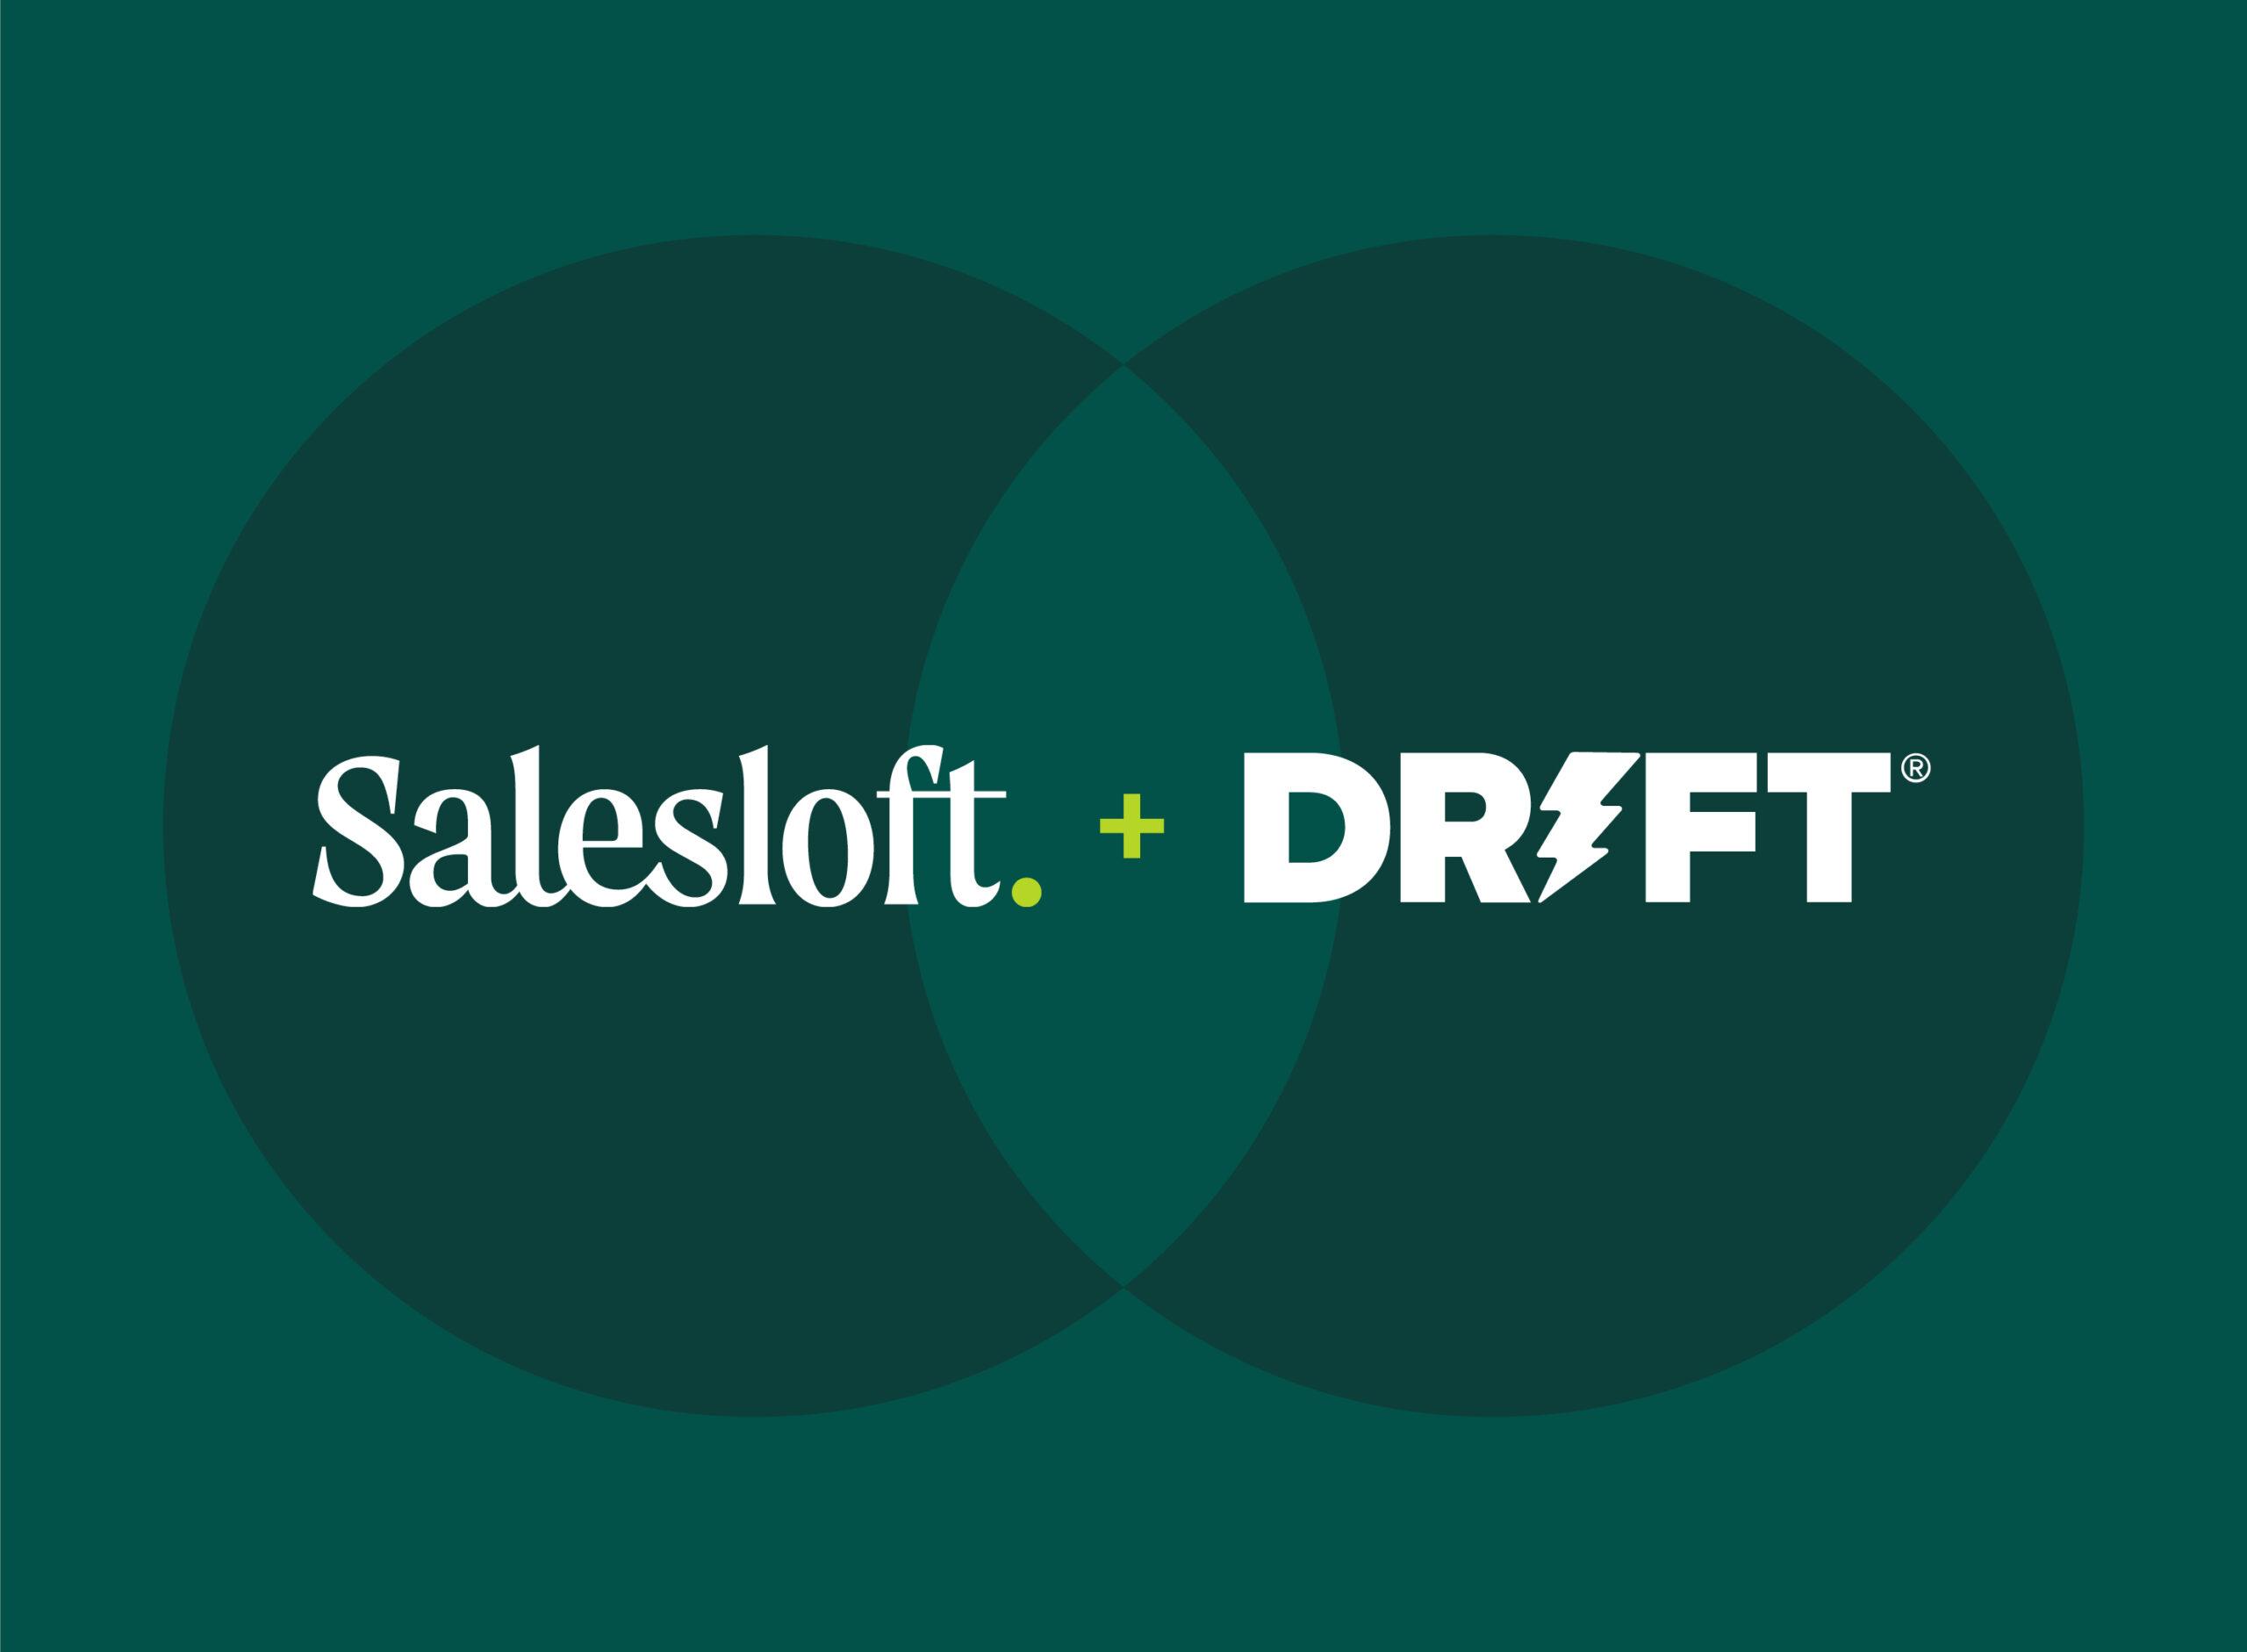 "Salesloft and Drift"